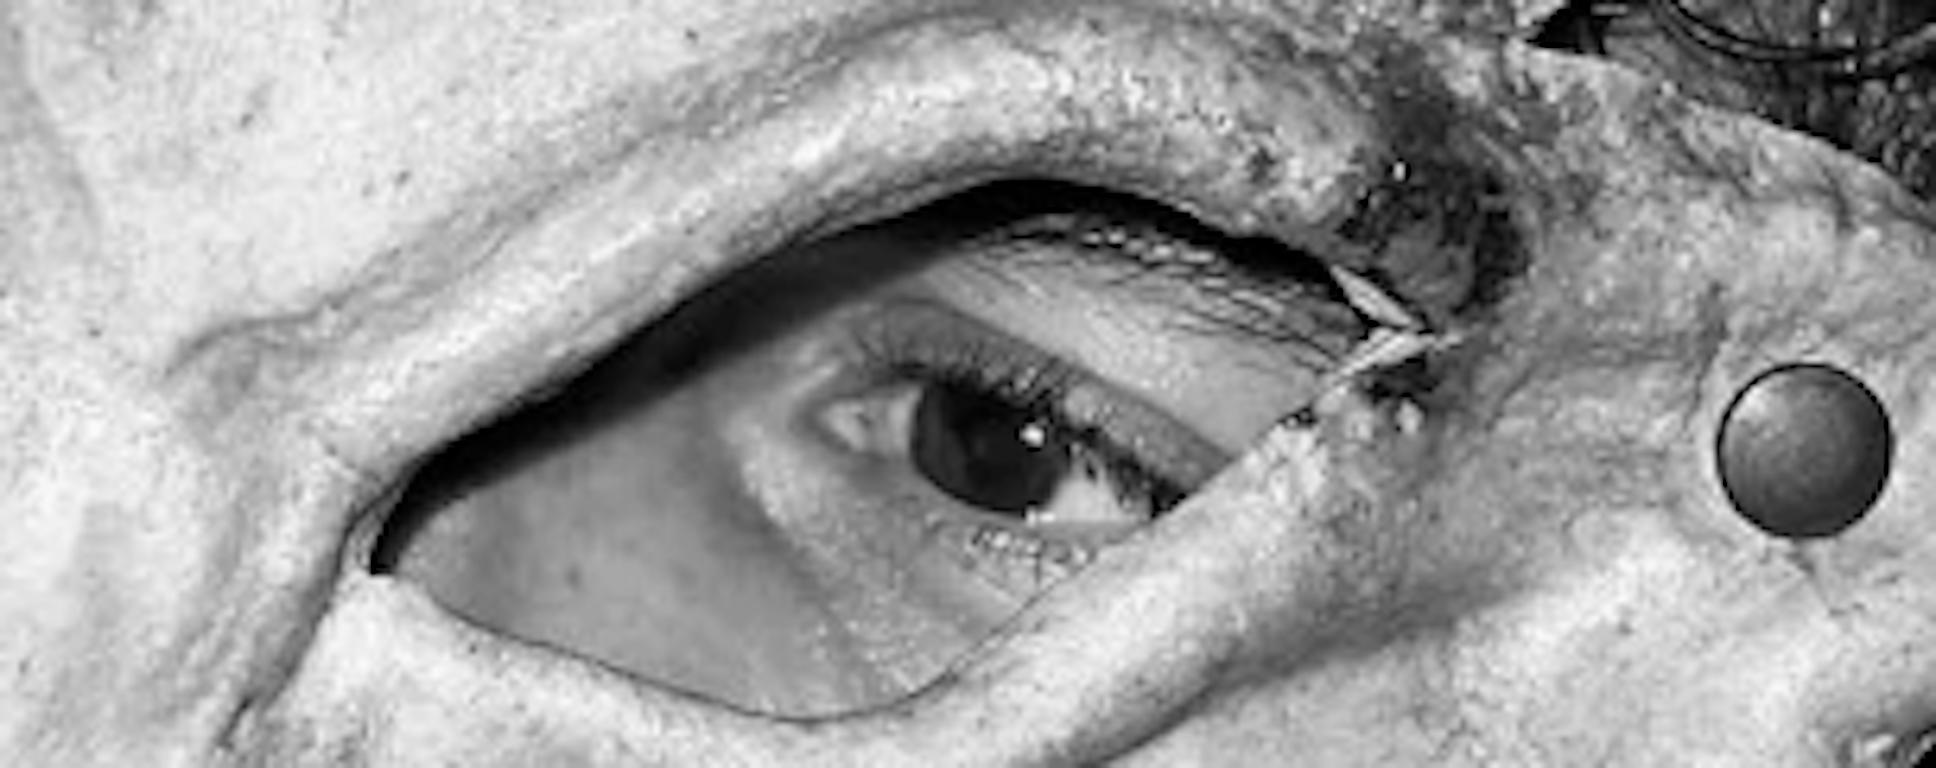 Ohne Titel 9 (Paris), 2010 von Arslan Sükan
Aus der Serie  La Notte
Schwarz-Weiß-Tintenstrahldruck auf Baryt-Fotopapier
Bildgröße: 50 cm H x 75 cm B
Auflage 1/6 + 1AP
Ungerahmt

Sükan schuf die La Notte